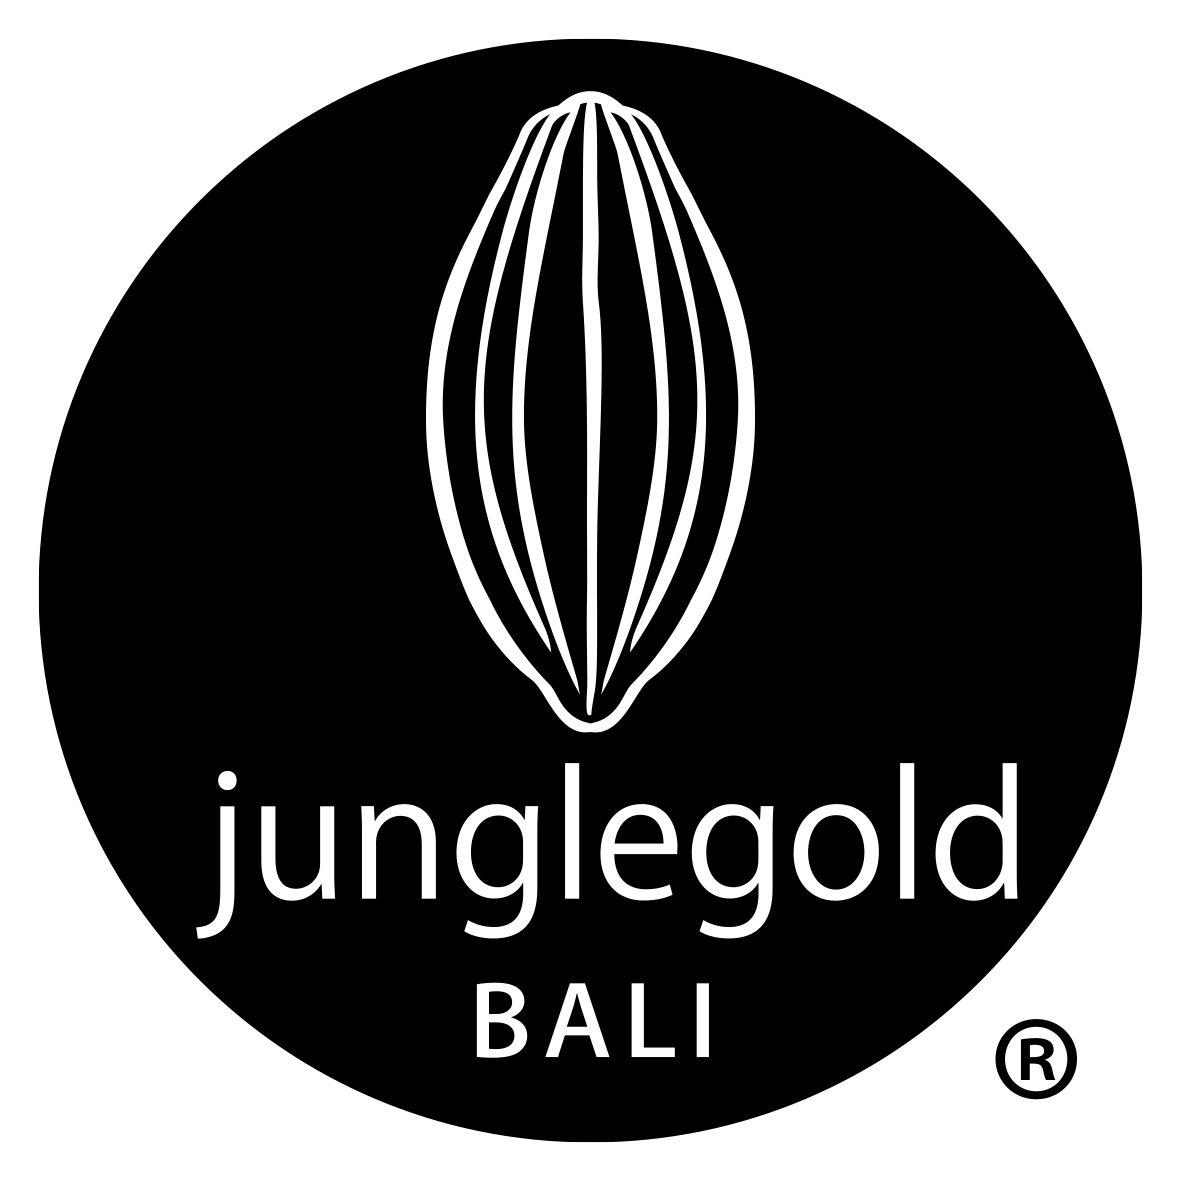 Junglegold Bali